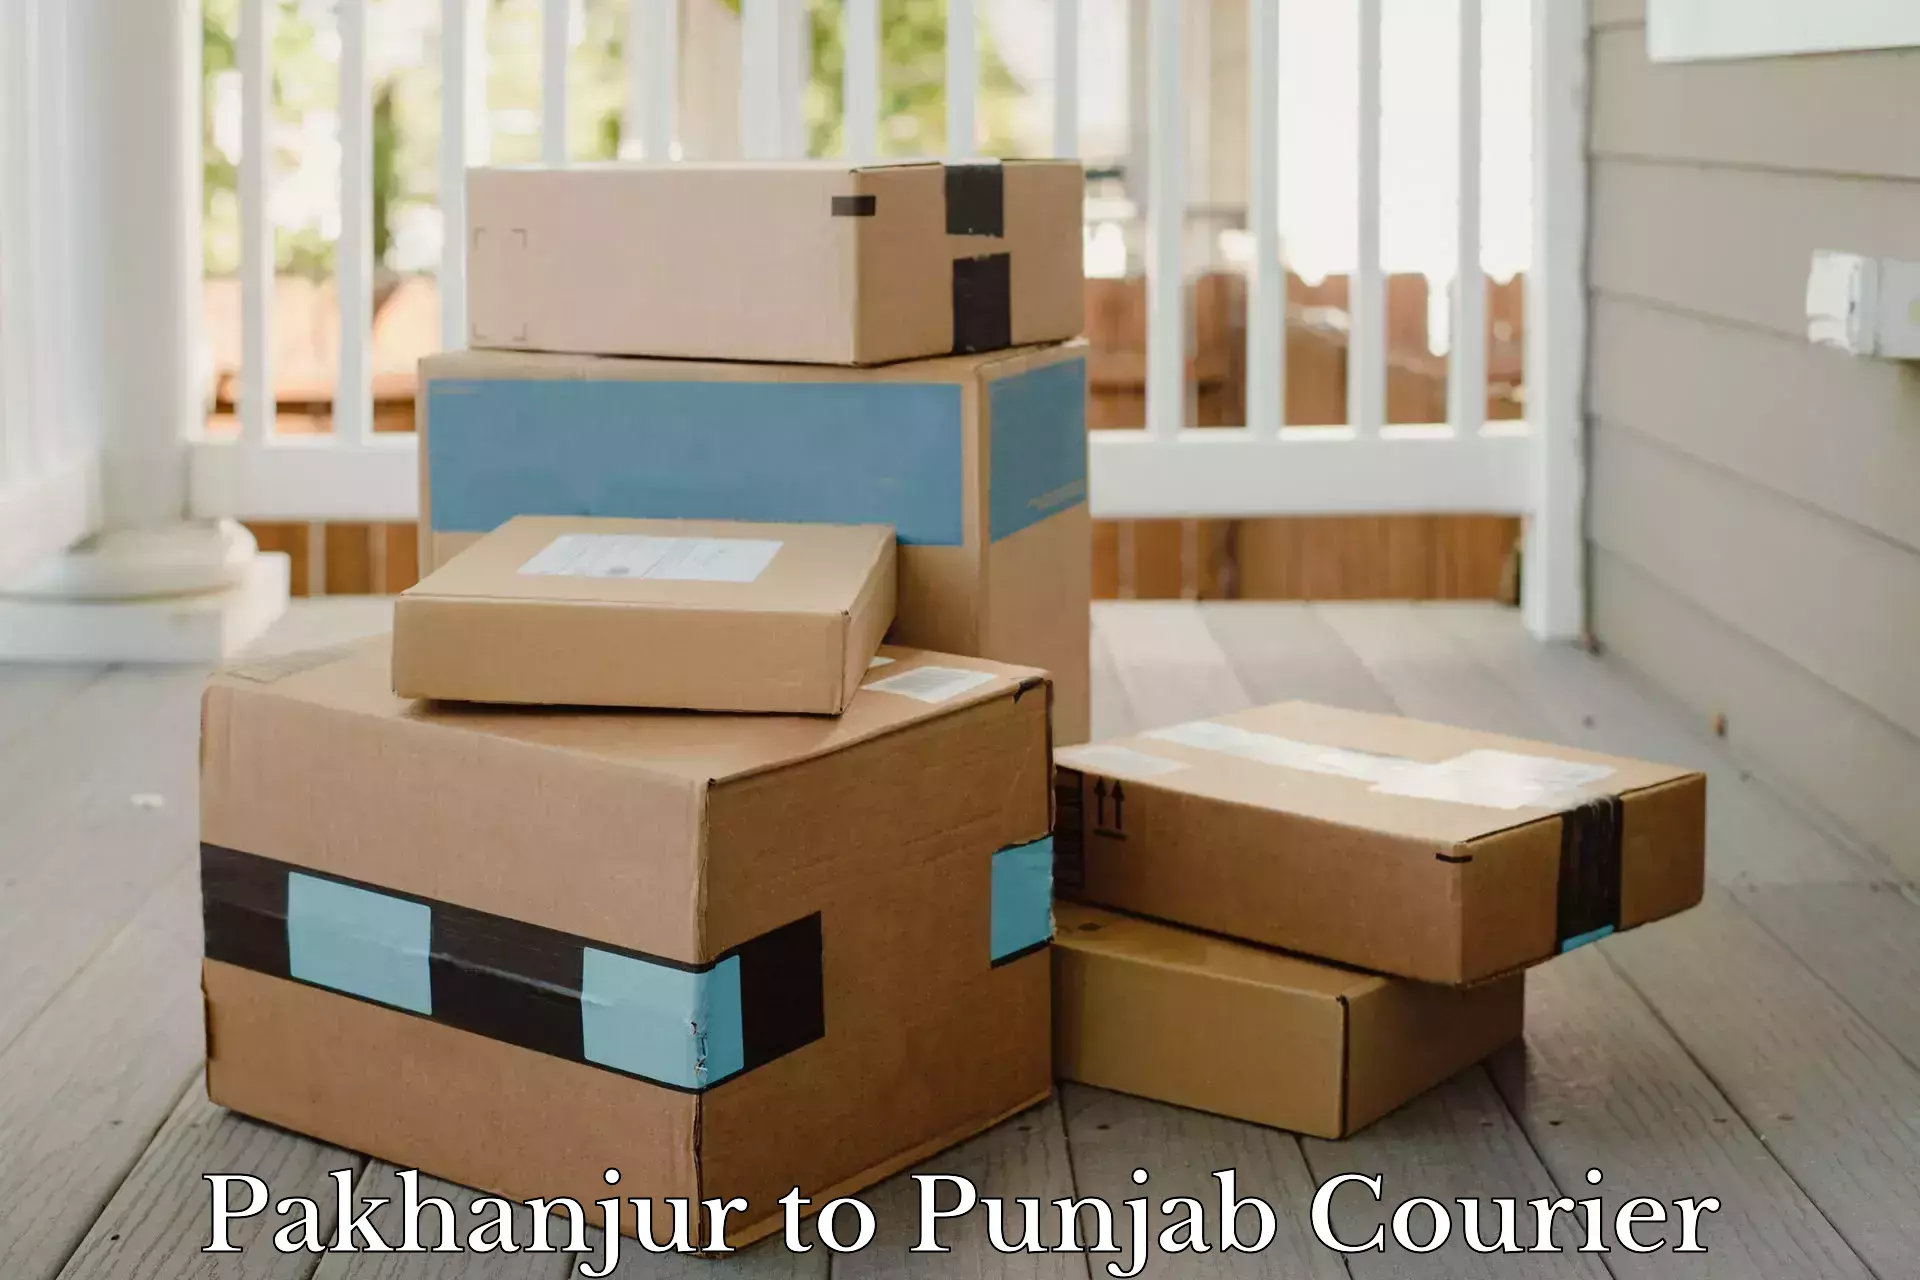 Courier service partnerships Pakhanjur to Muktsar